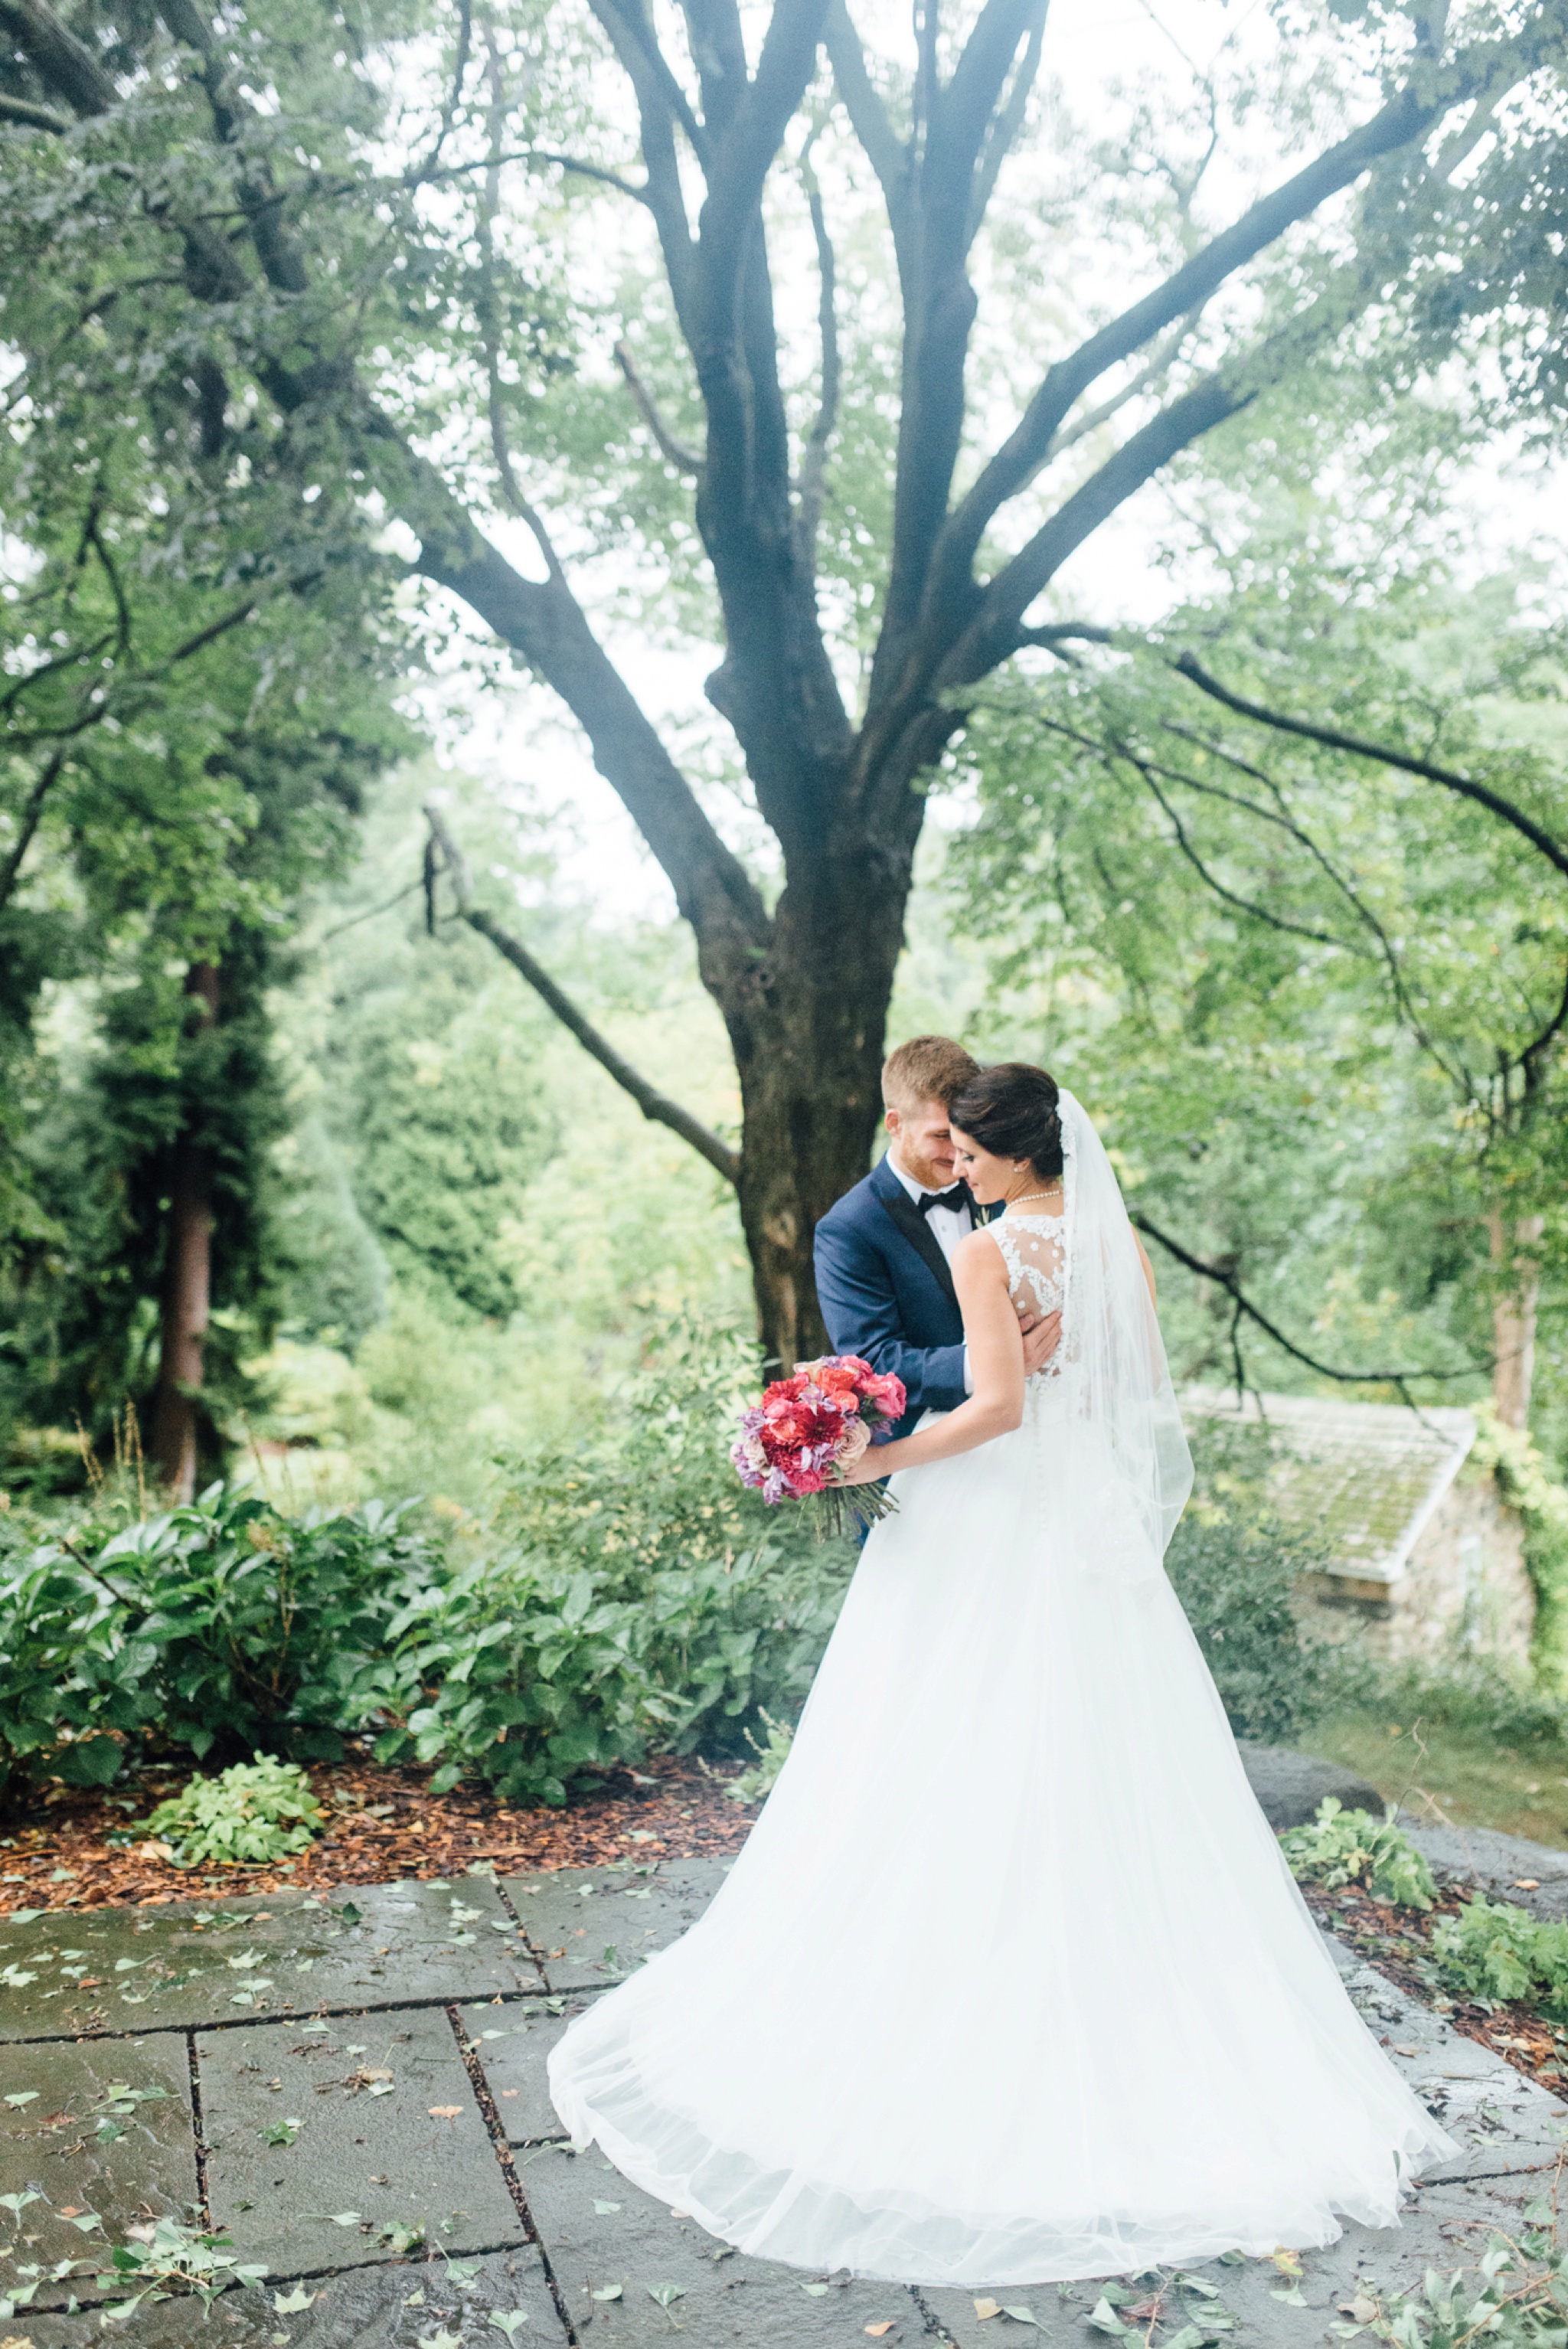 64-stephanie-gary-tyler-arboretum-wedding-media-pennsylvania-alison-dunn-photography-photo